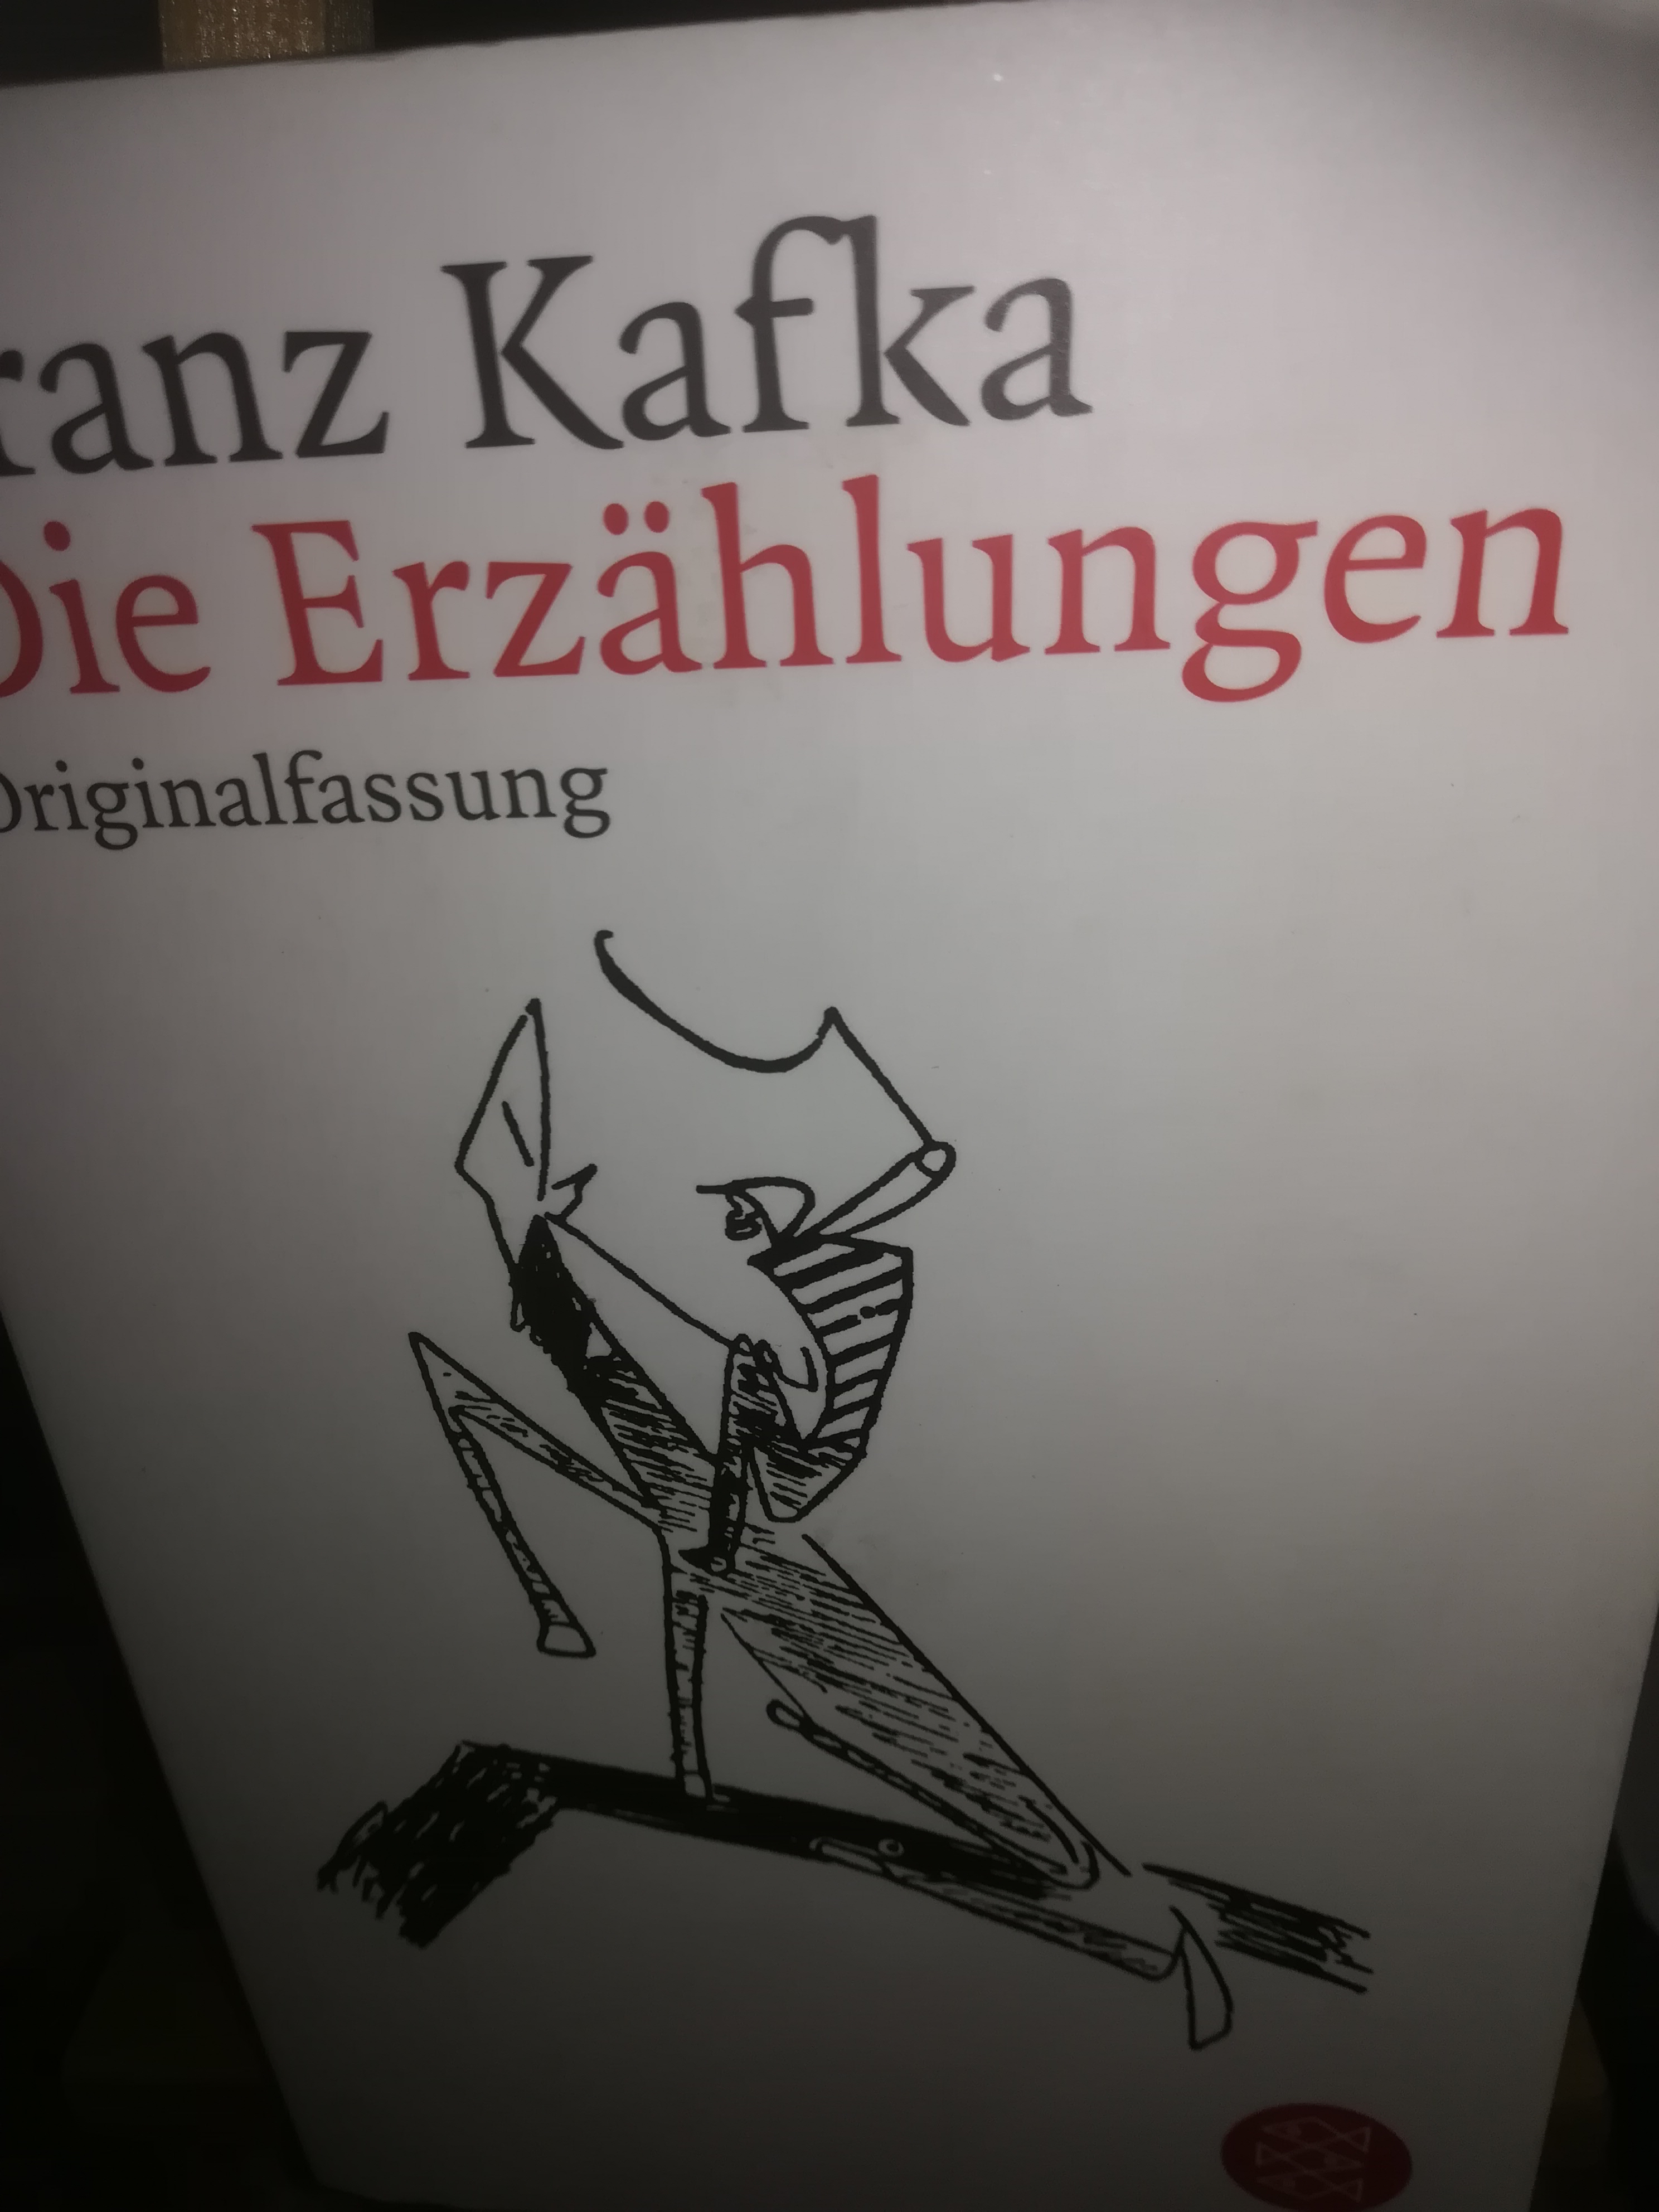 Die Erzählungen, Originalfassung - Kafka Franz